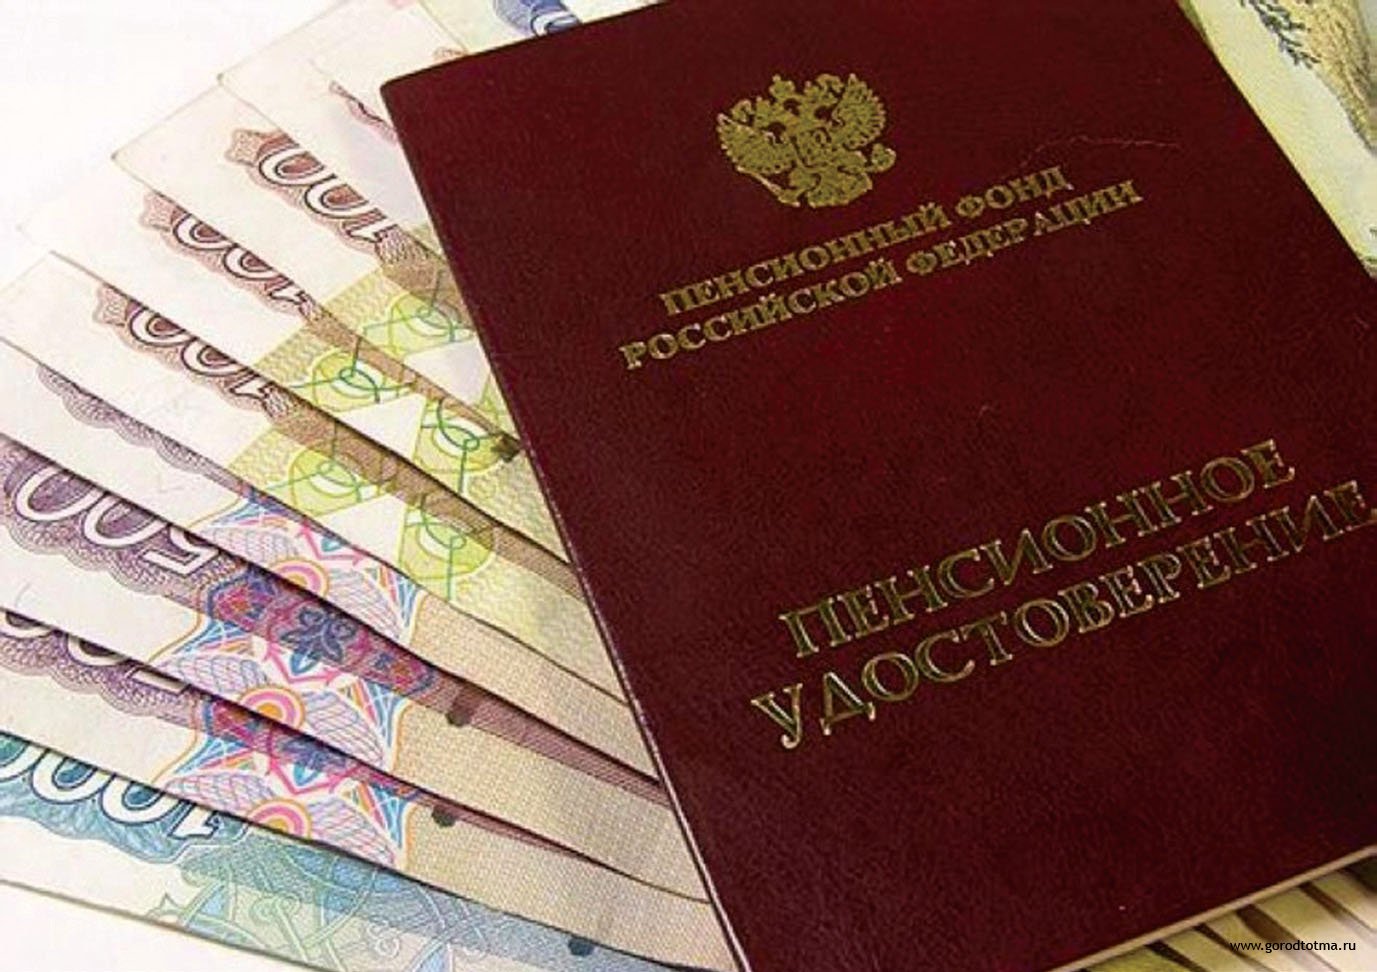 Страховые пенсии неработающих россиян выросли на 4%, размер ЕДВ - на 7%